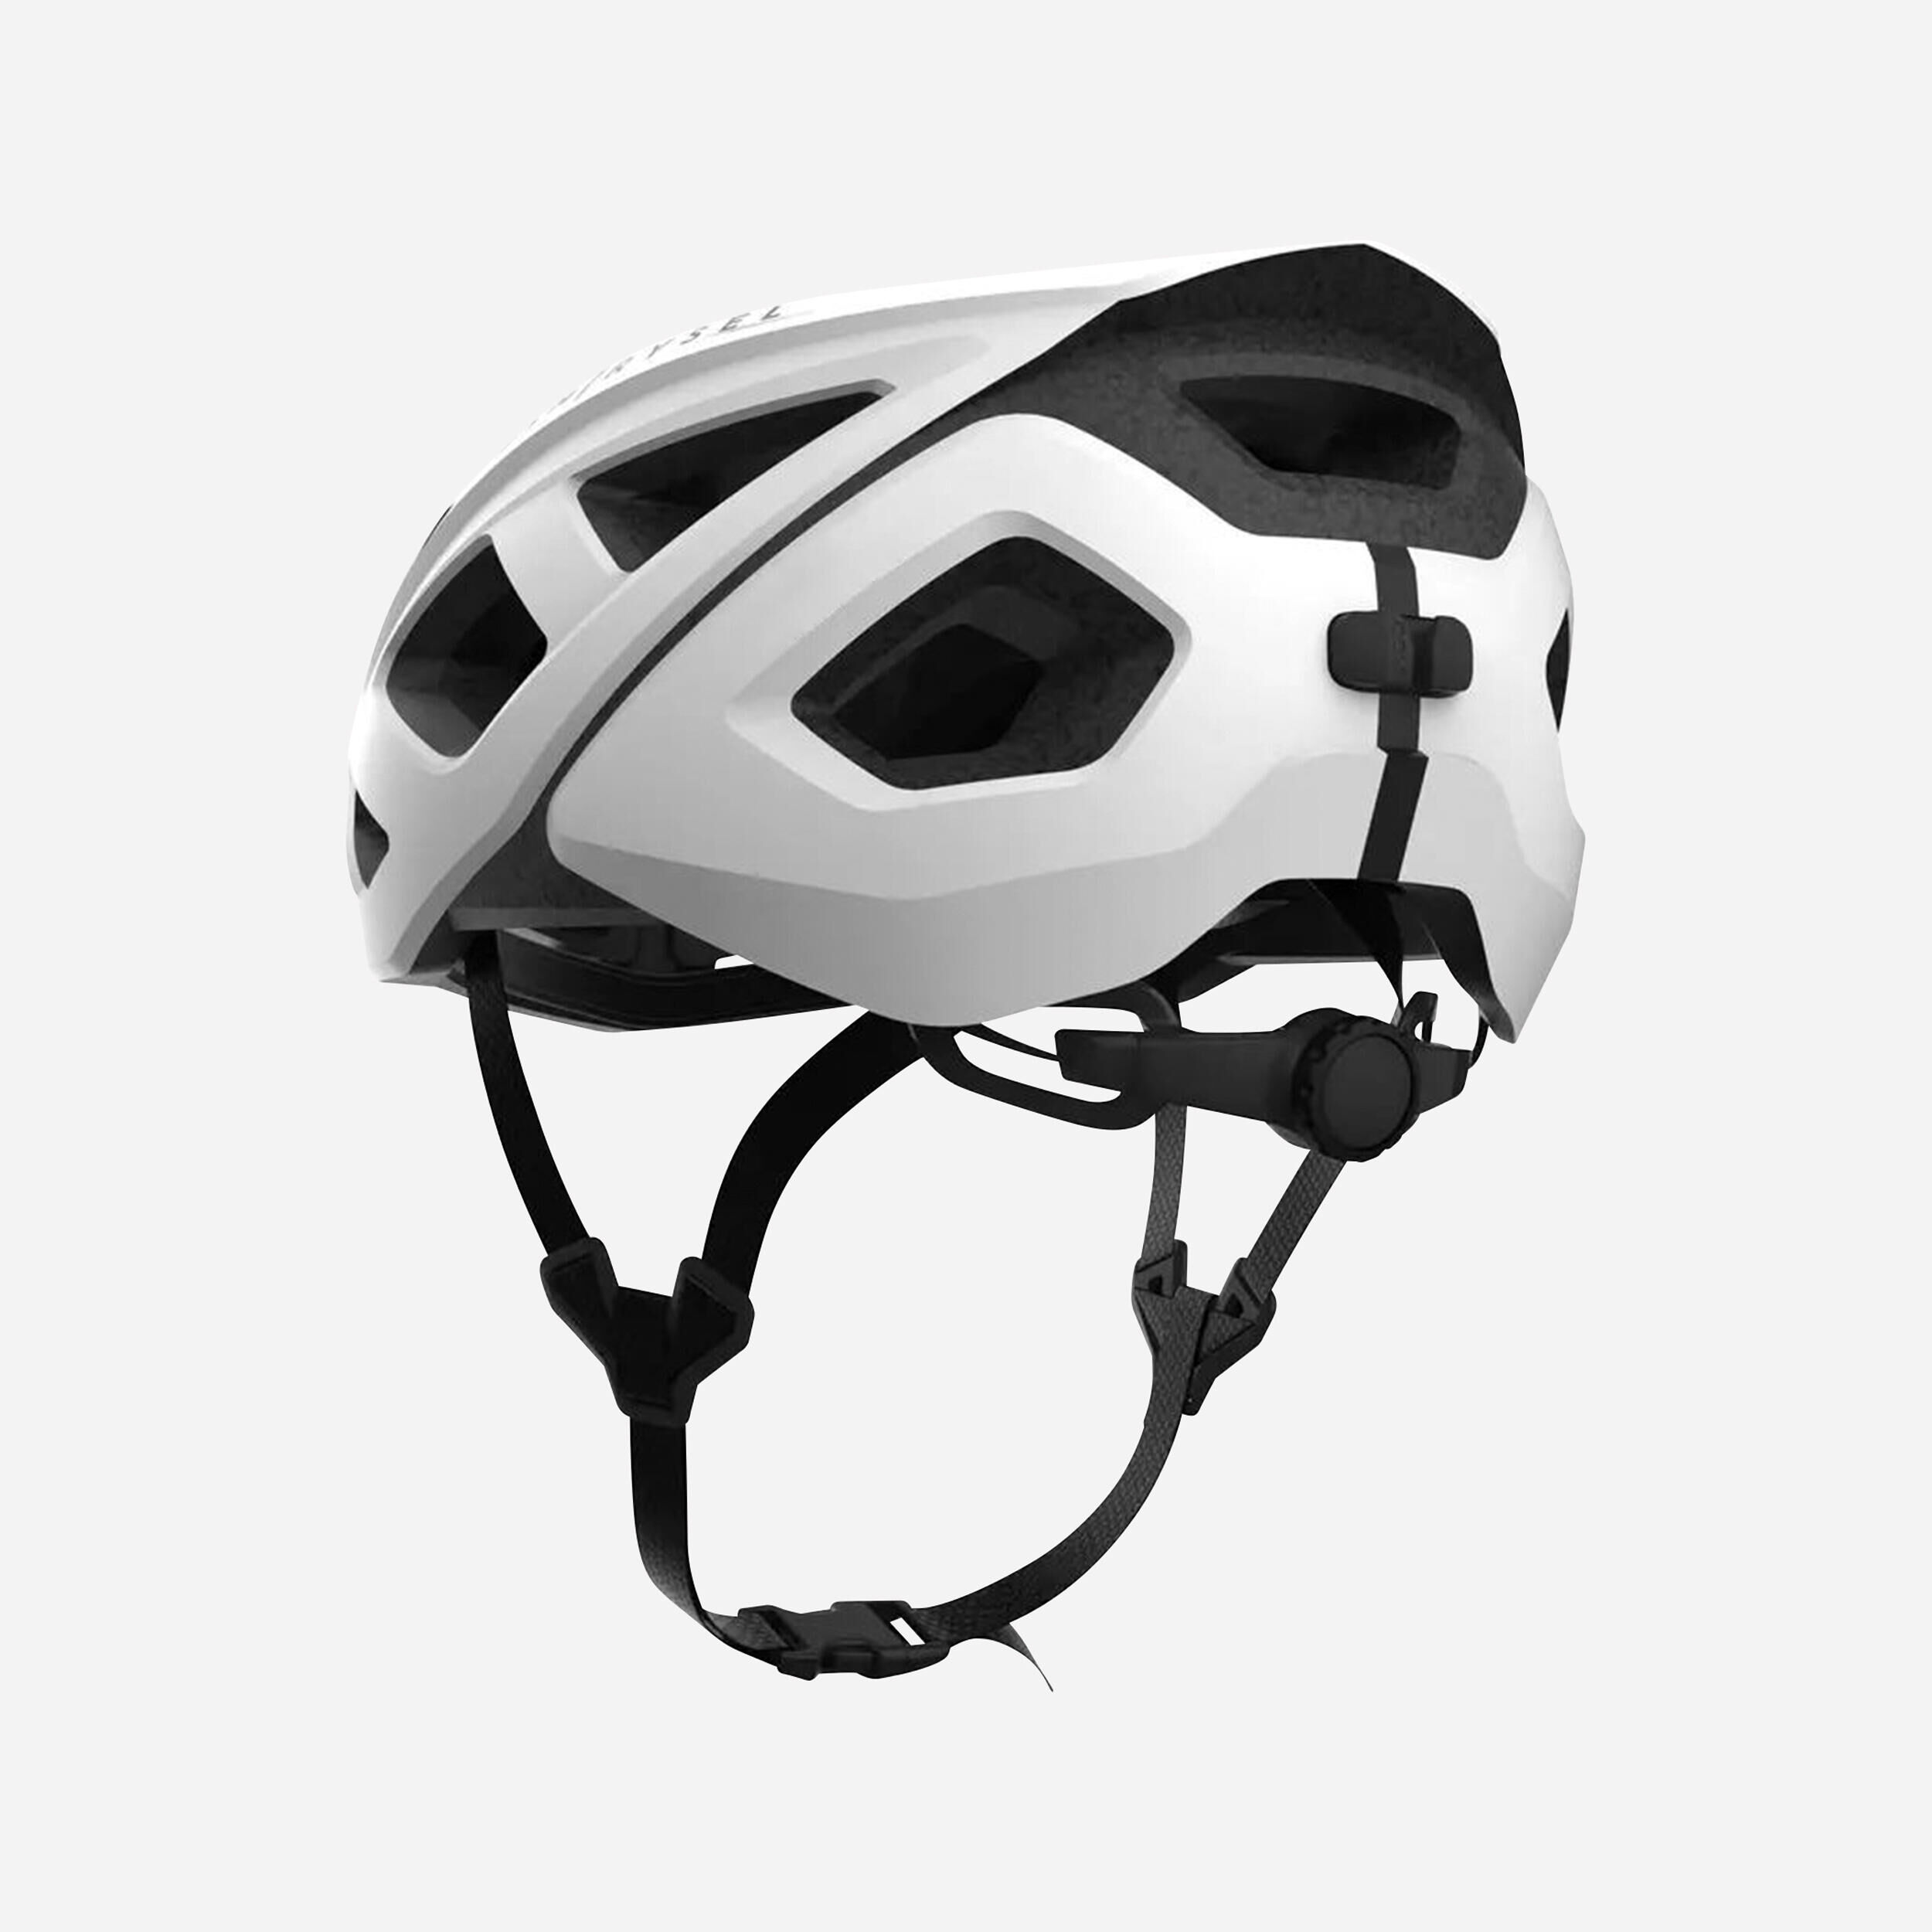 VAN RYSEL RoadR 500 Road Cycling Helmet - White